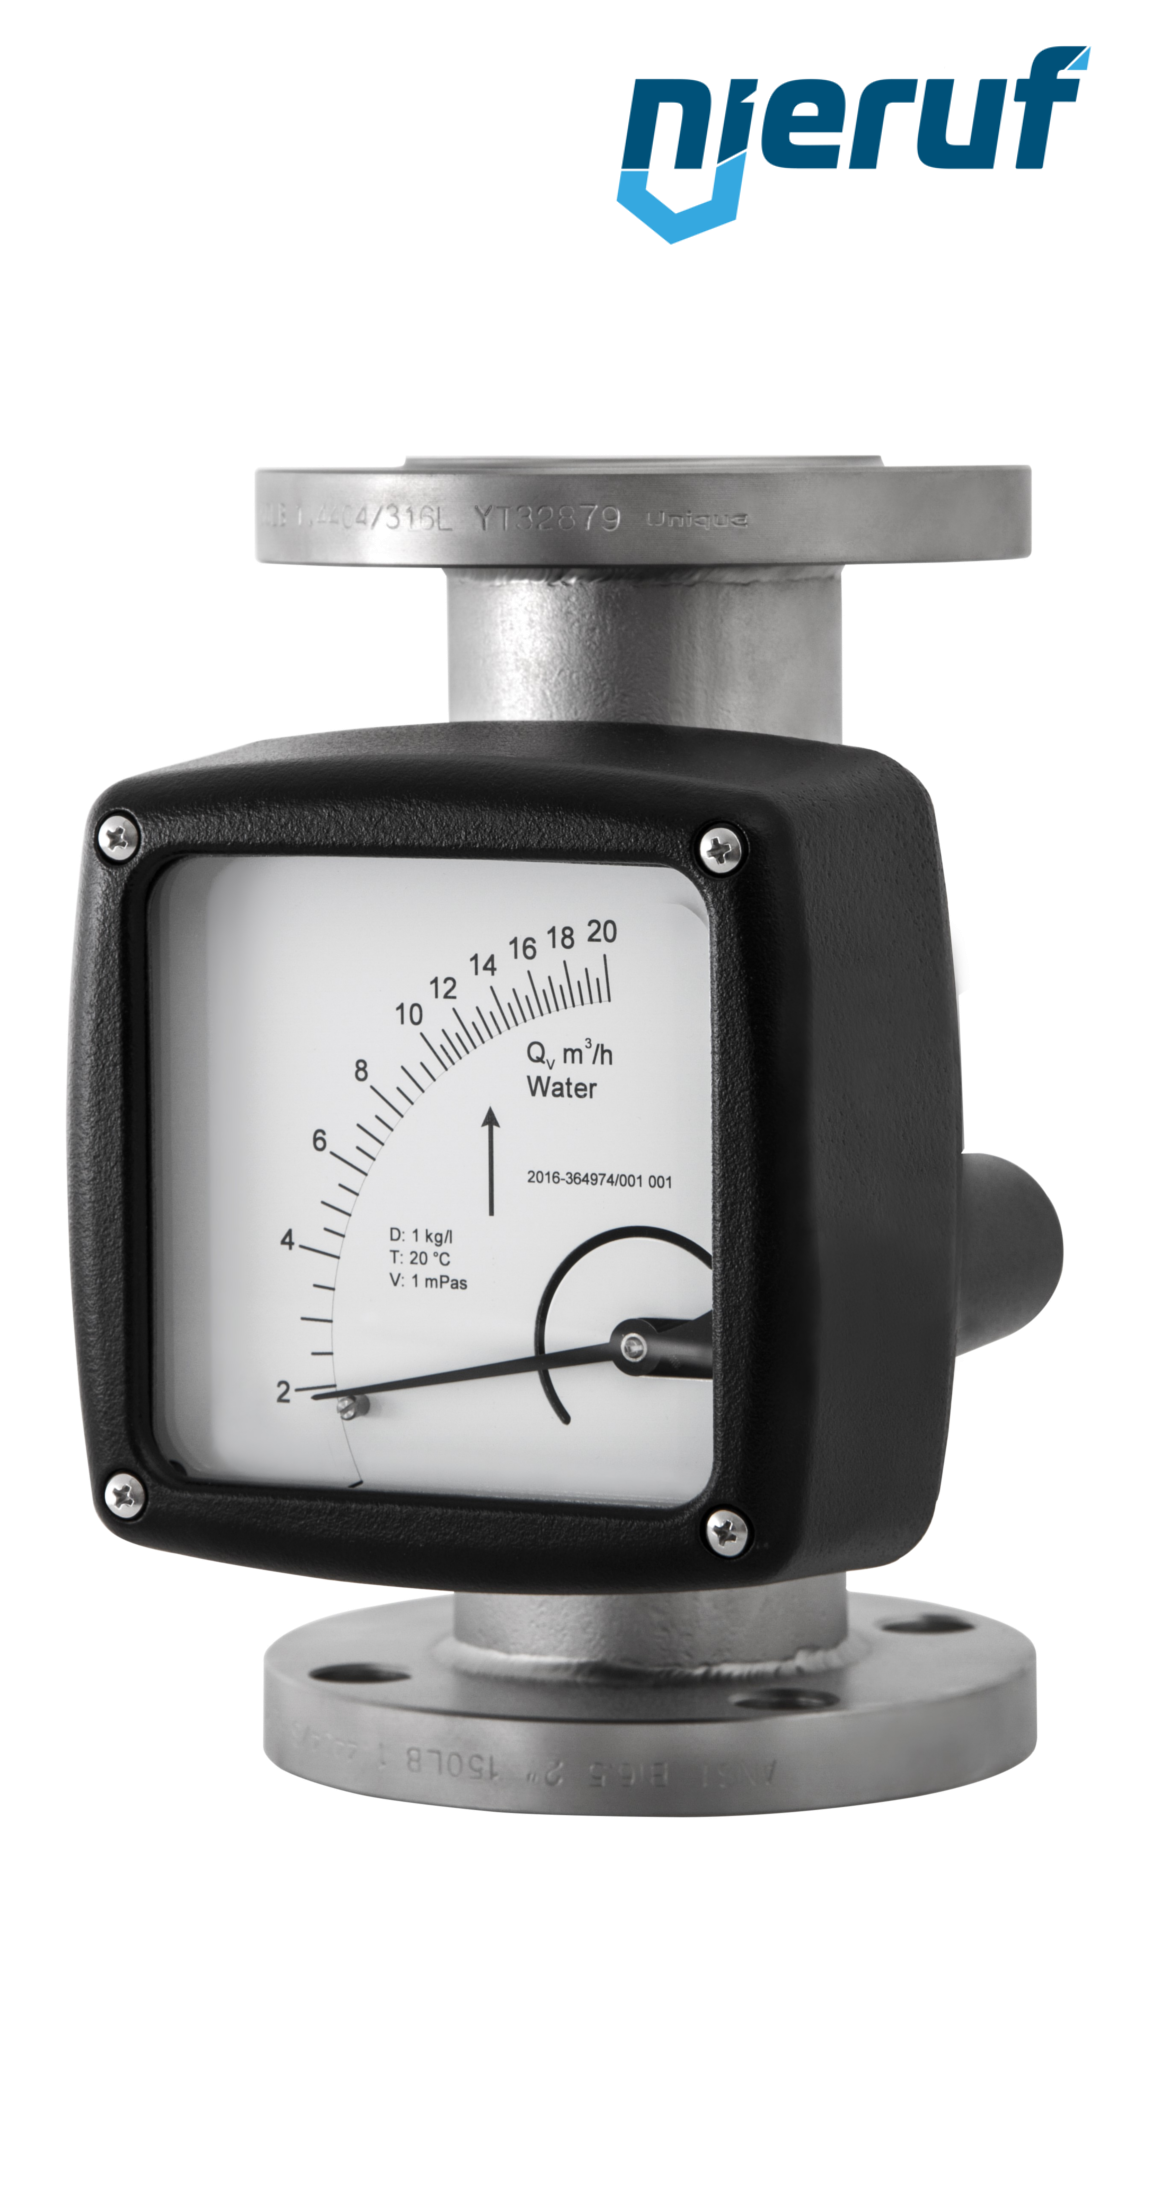 misuratore di flusso / rotametro completamente in metallo DN50-attacco 25,0 - 250,0 l/h tubo DN15 acqua